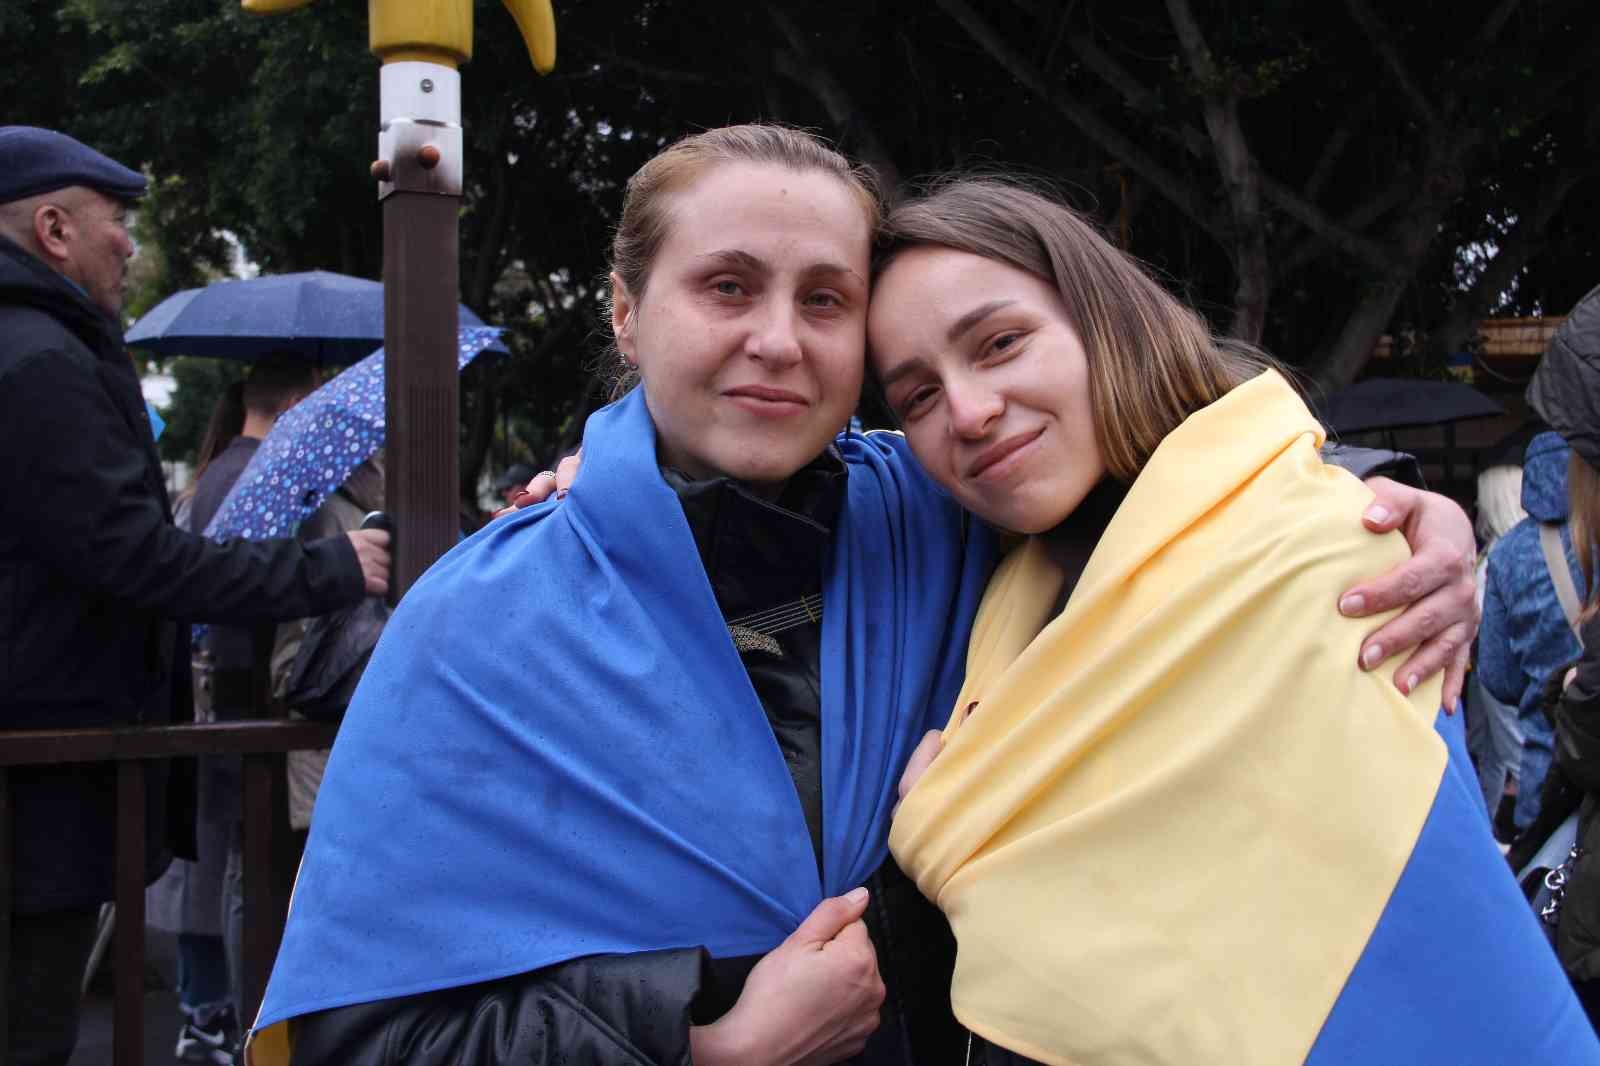 Ruslar ve Ukraynalılar, Mersin’de el ele savaşın bitmesini istedi #mersin